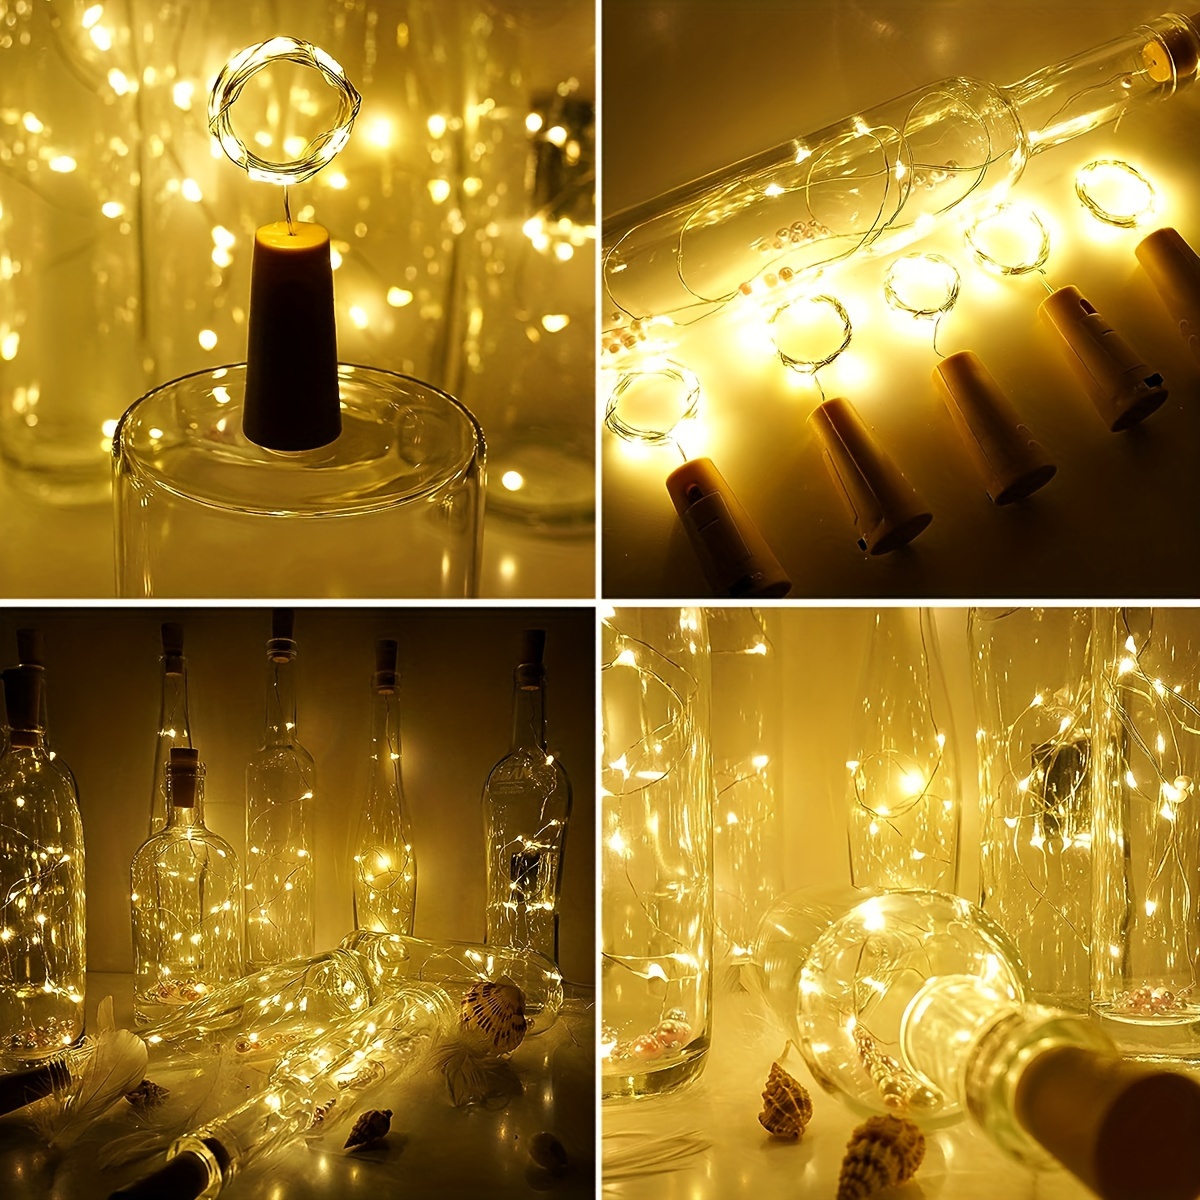 HTAIGUO Lot de 10 20 lumières de bouteille de vin LED avec liège